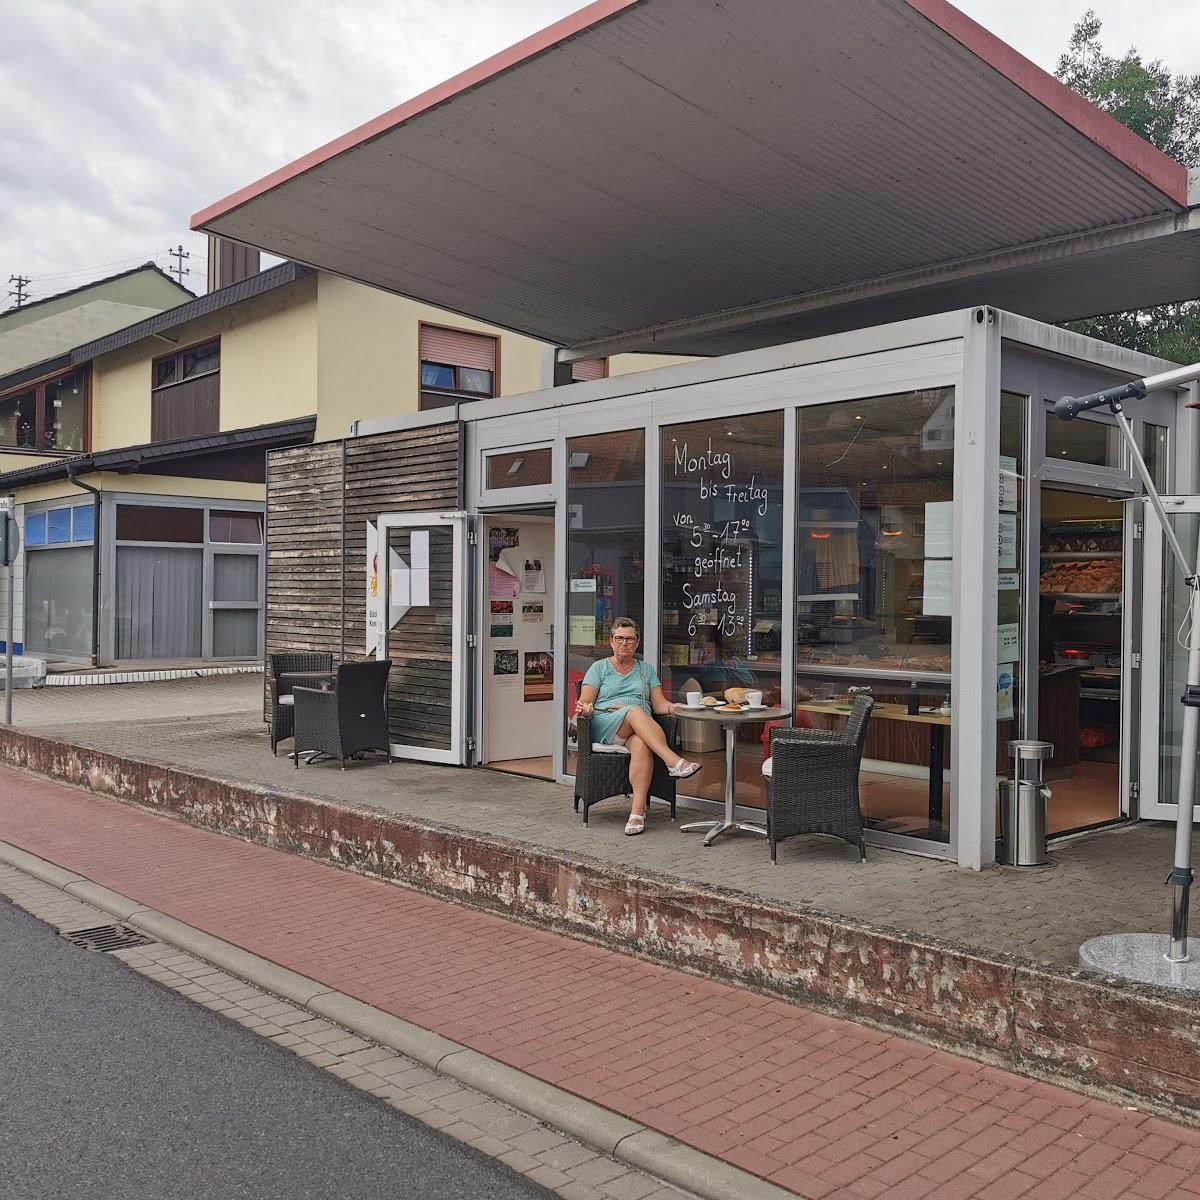 Restaurant "Pit Stop" in Wertheim